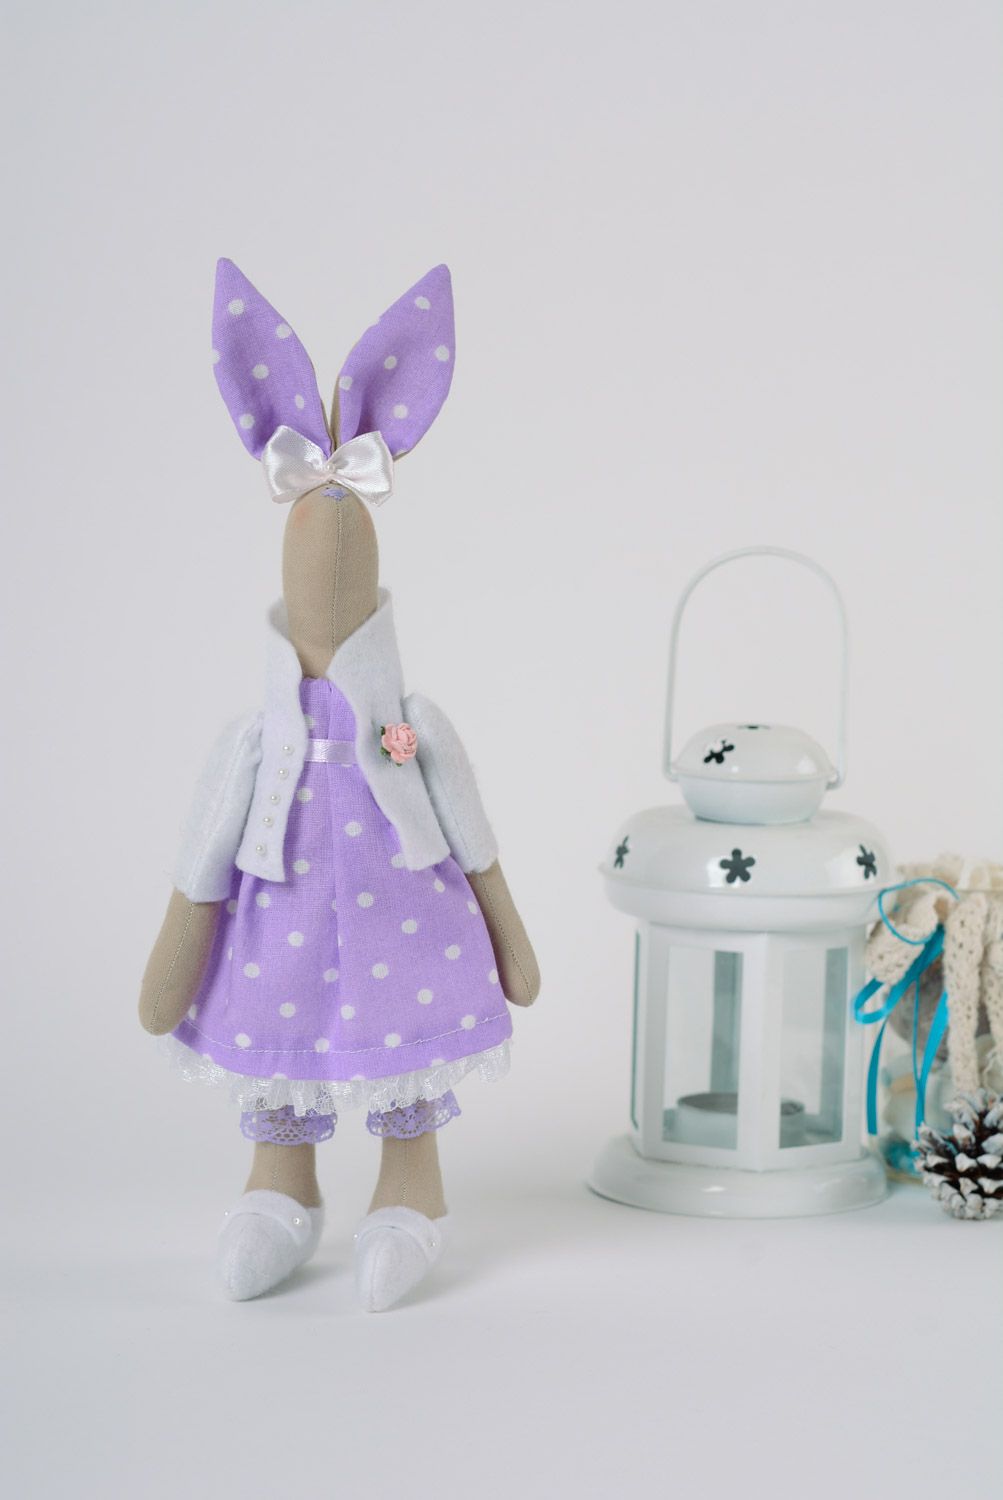 Beau jouet mou fait main lapin en coton et jersey de couleur lilas décor maison photo 1